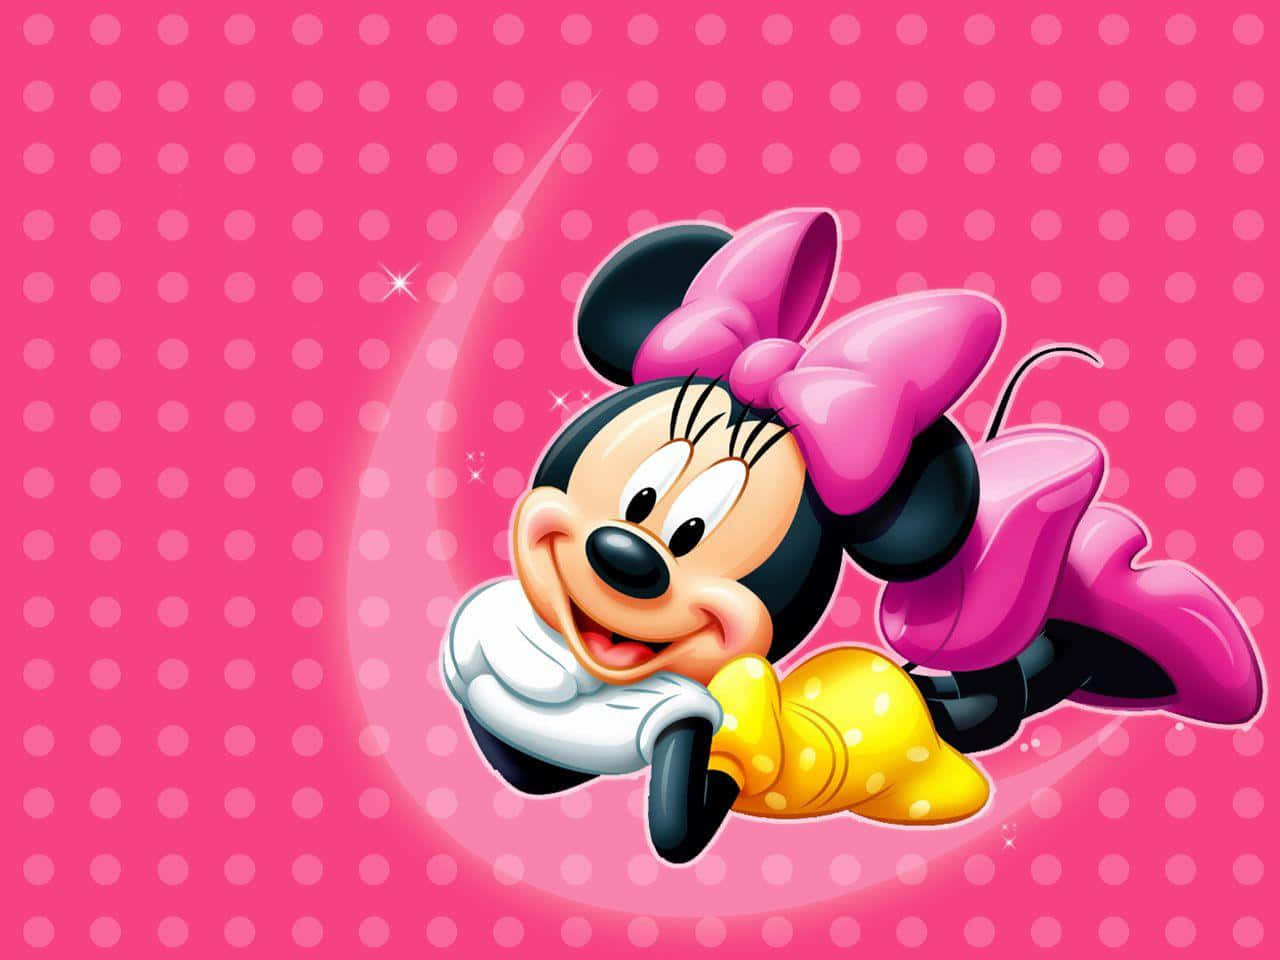 Det ikoniske Mickey Mouse-design.